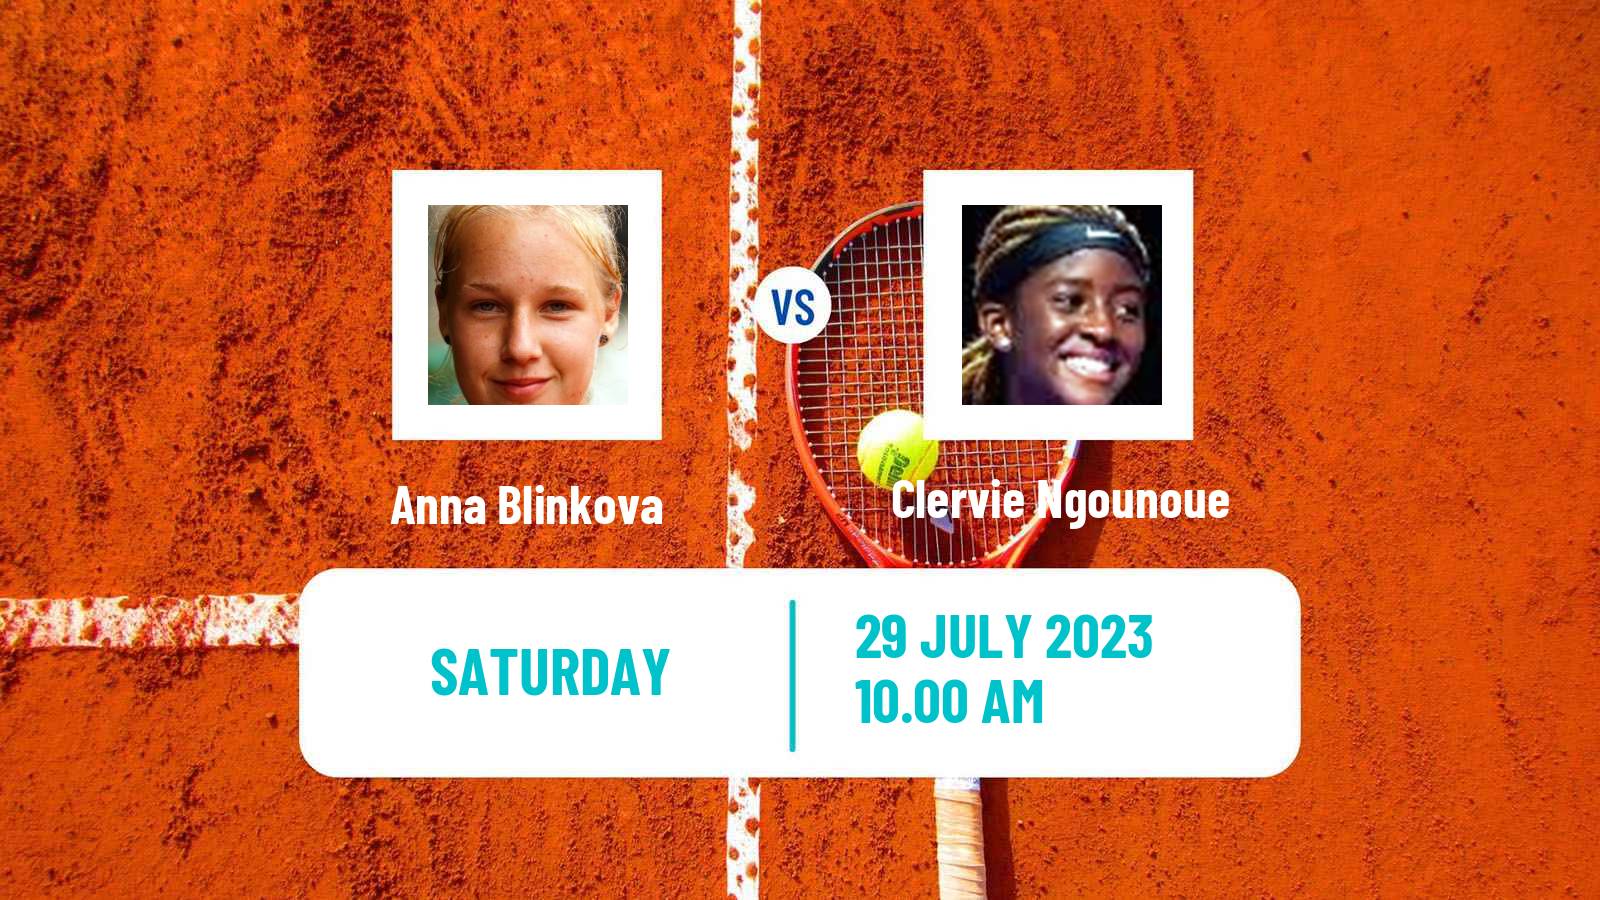 Tennis WTA Washington Anna Blinkova - Clervie Ngounoue